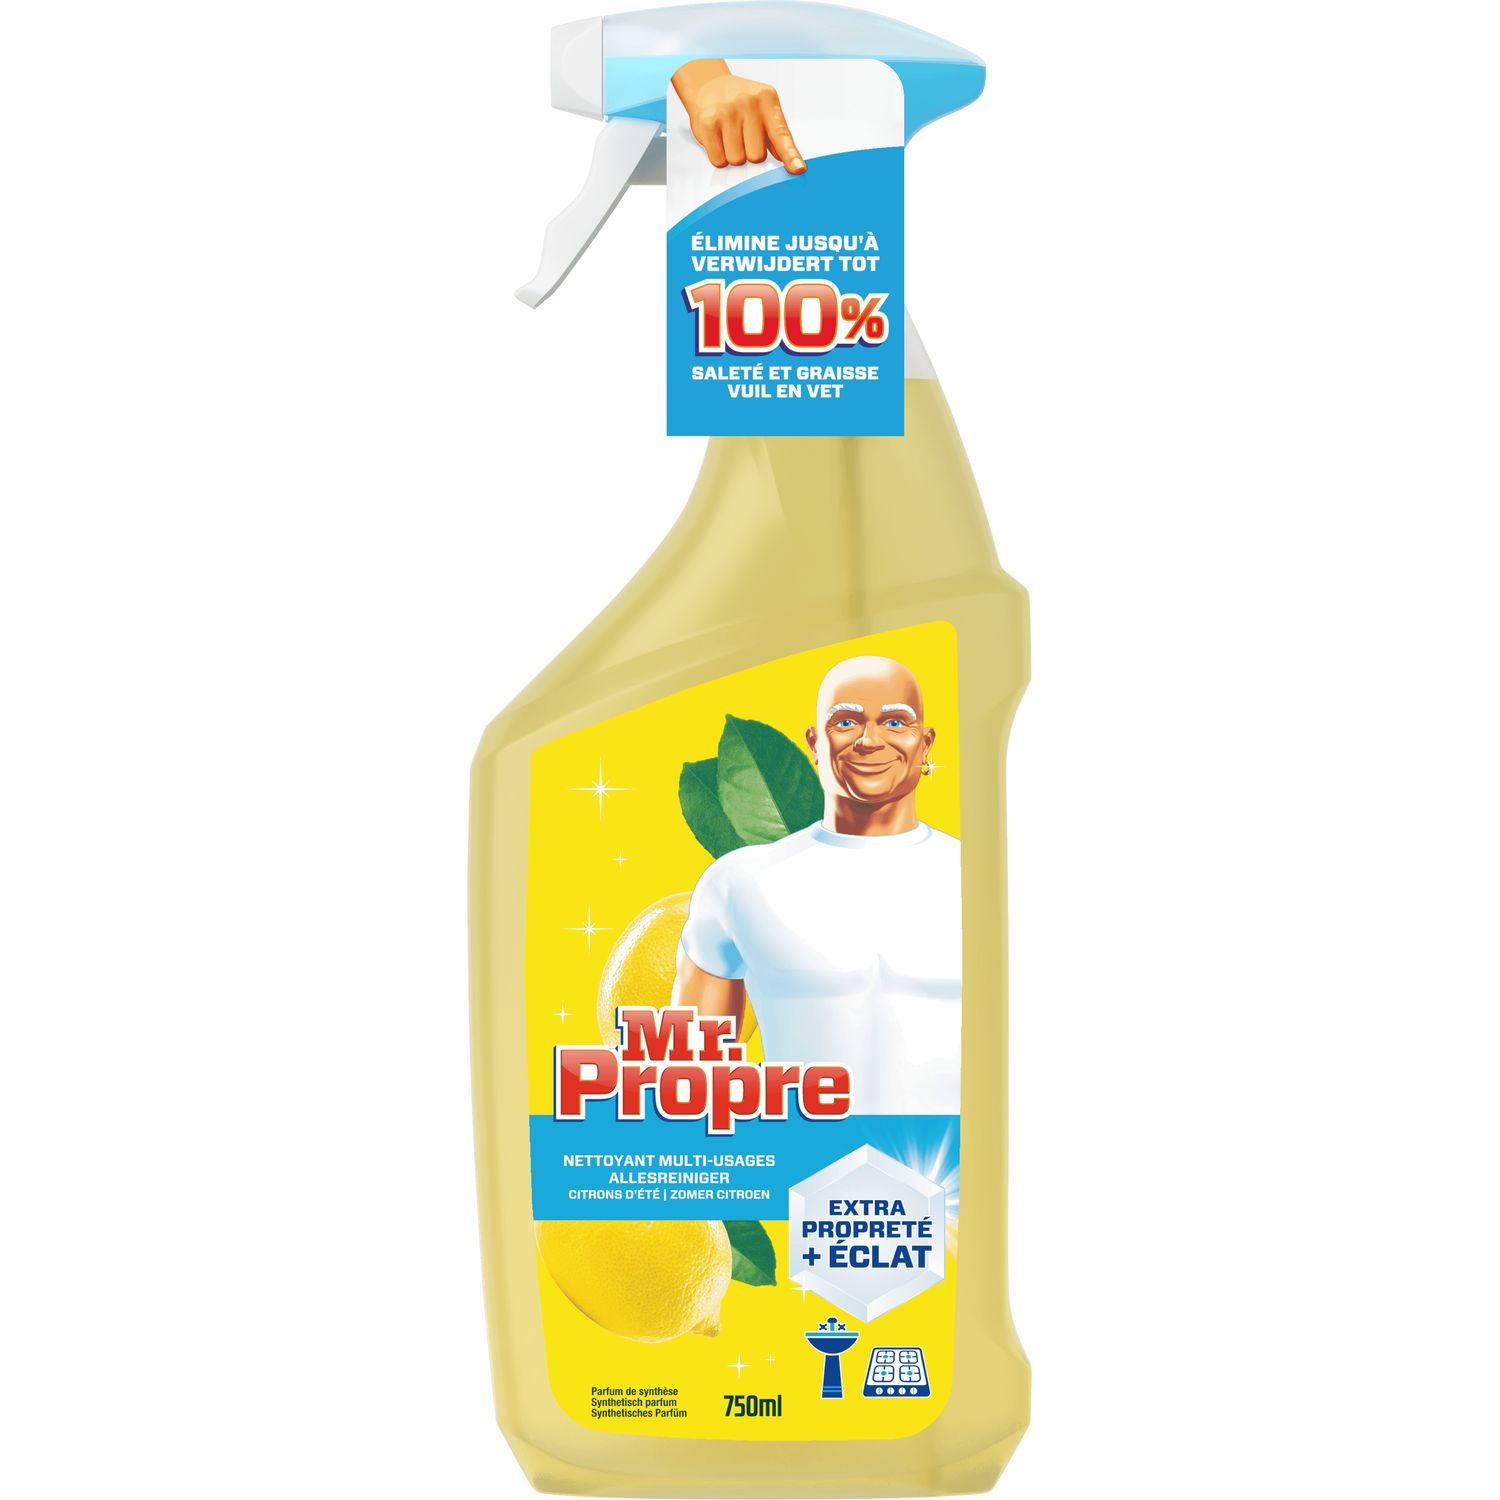 Mr. Propre Nettoyant tout usage au citron (1000ml) acheter à prix réduit